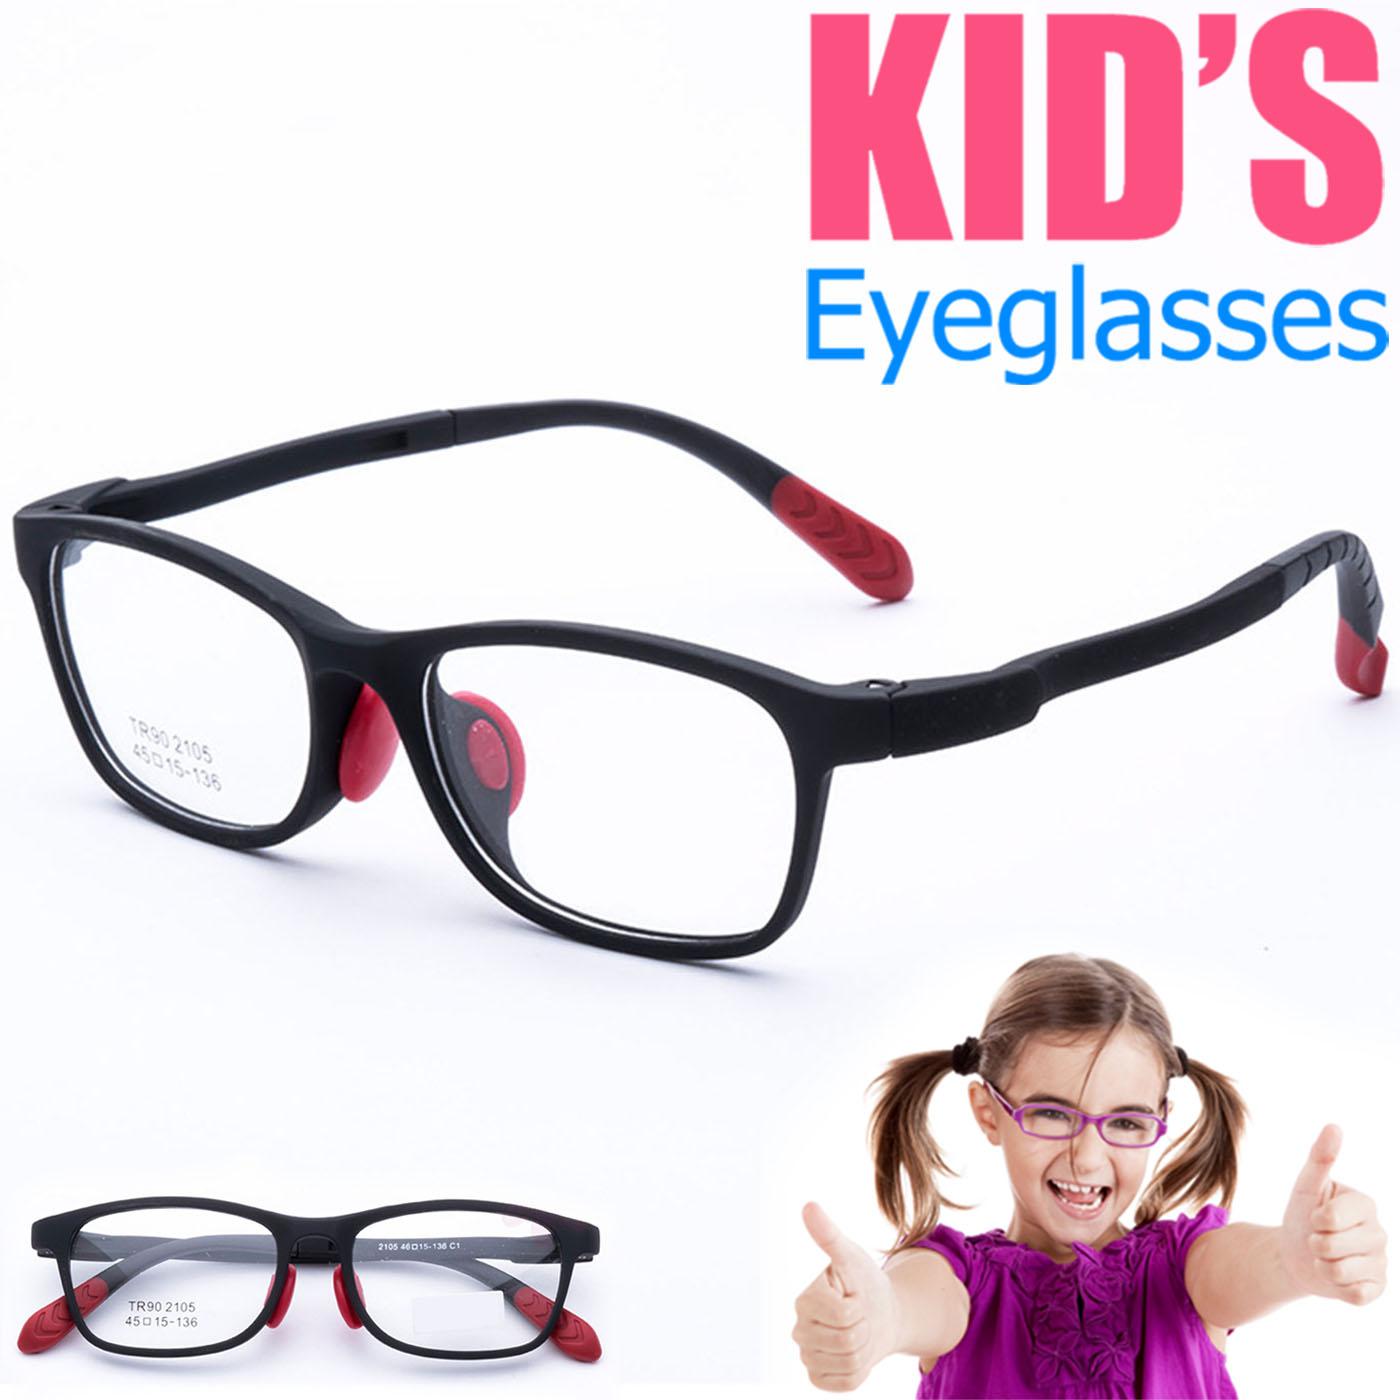 แว่นตาเกาหลีเด็ก Fashion Korea Children แว่นตาเด็ก รุ่น 2105 C-1 สีดำ กรอบแว่นตาเด็ก Square ทรงสี่เหลี่ยม Eyeglass baby frame ( สำหรับตัดเลนส์ ) วัสดุ TR-90 เบาและยืดหยุนได้สูง ขาข้อต่อ Kid eyewear Glasses